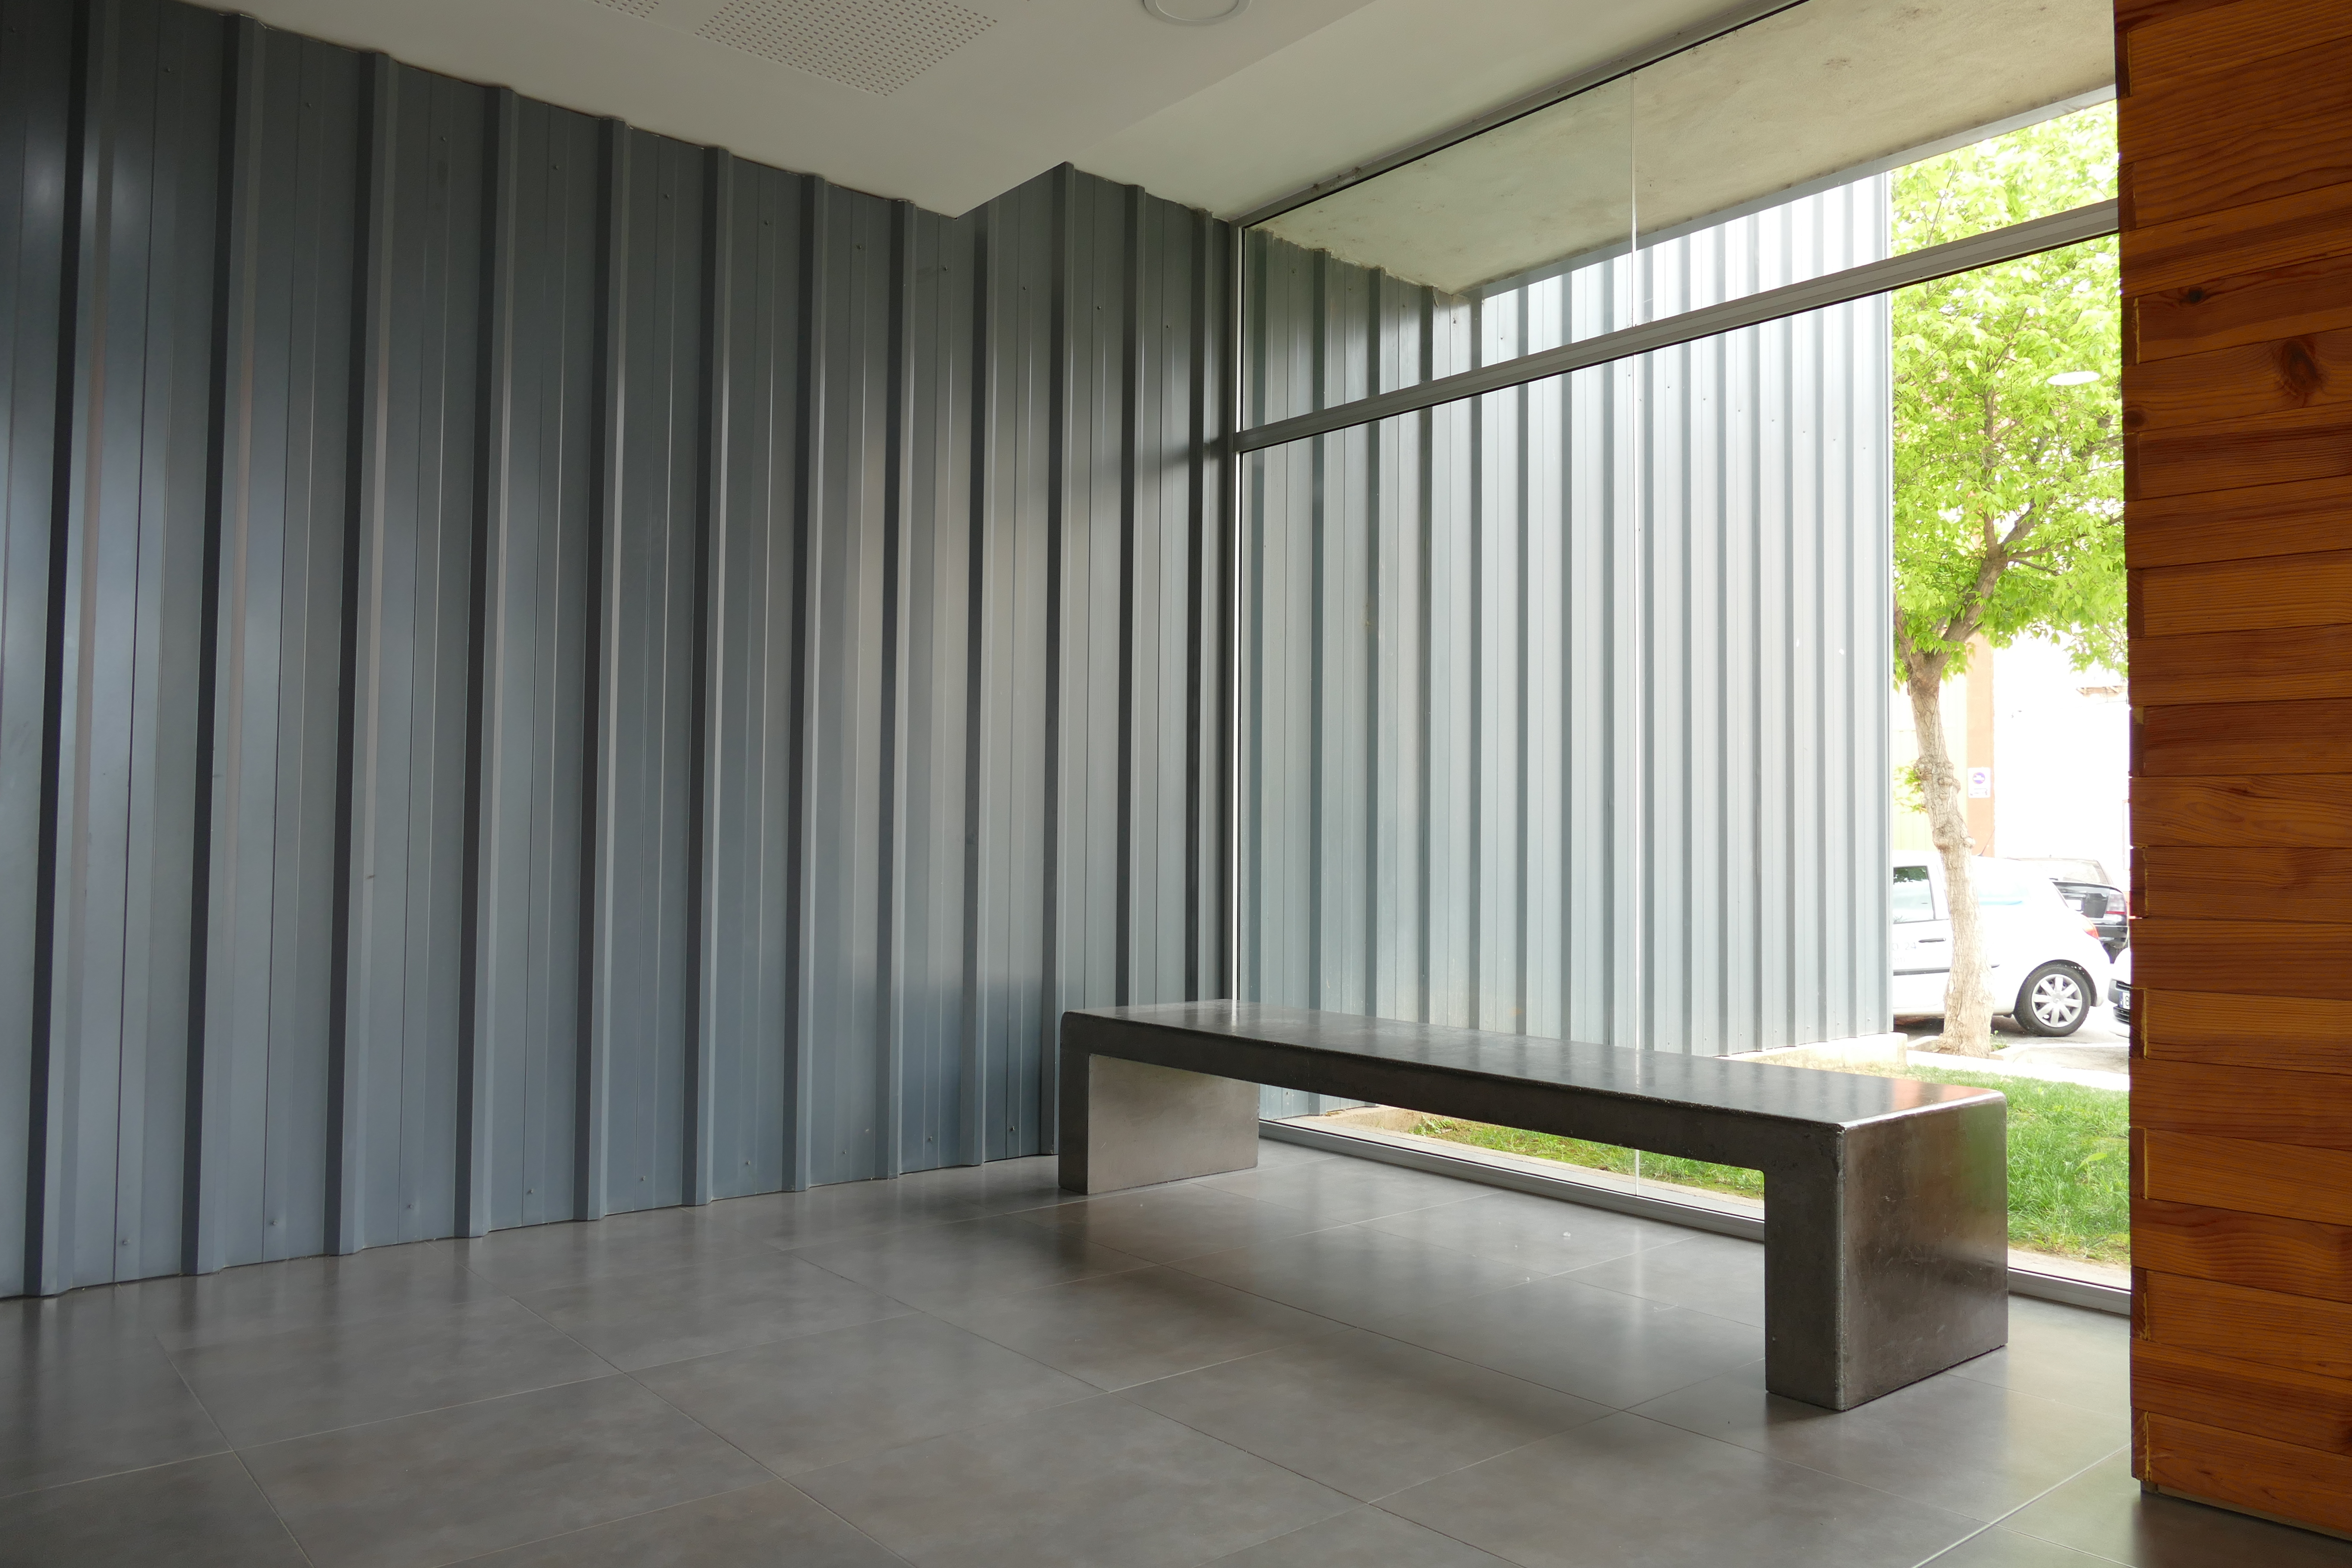 fachada metalica simple en chapa grecada para el polideportivo bovavar en alacuas con el perfil INCO 30.5 (Valencia) - Espaa